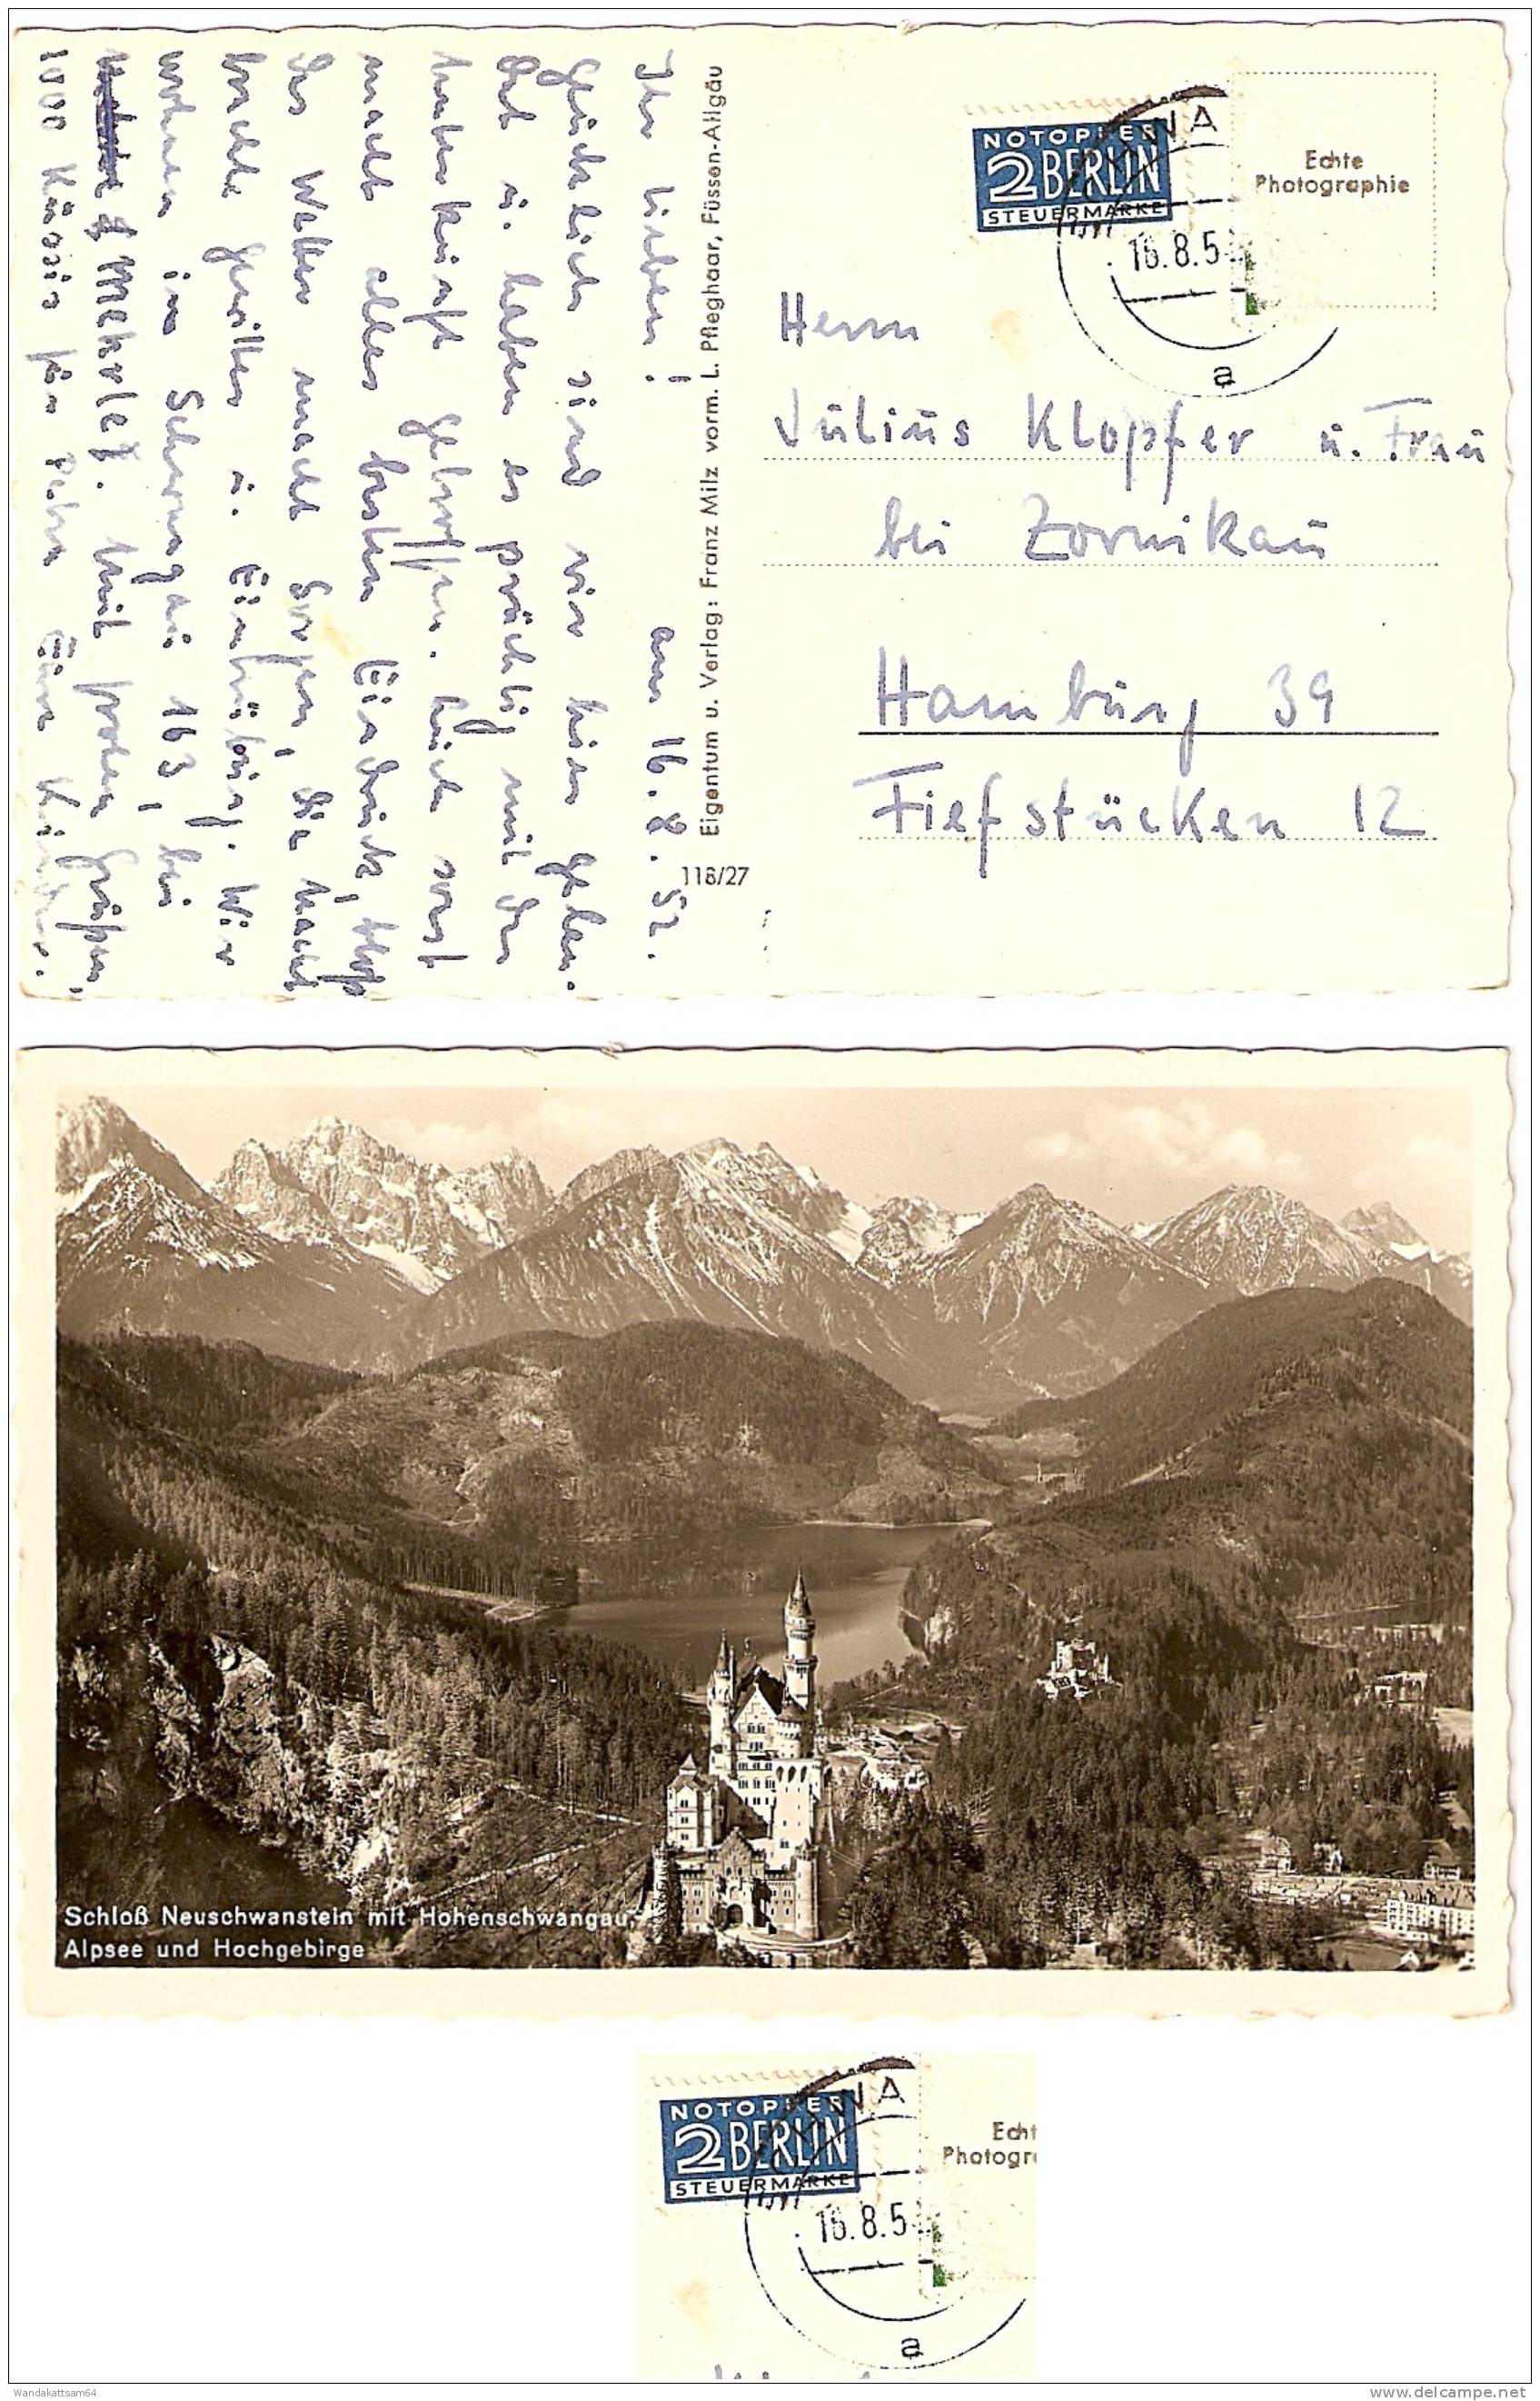 AK Schloß Neuschwanstein Mit Hohenschwangau Alpsee Und Hochgebirge 16.8.52 SCHWA  A Mehr Nicht Lesbar Briefmarke Entfern - Füssen